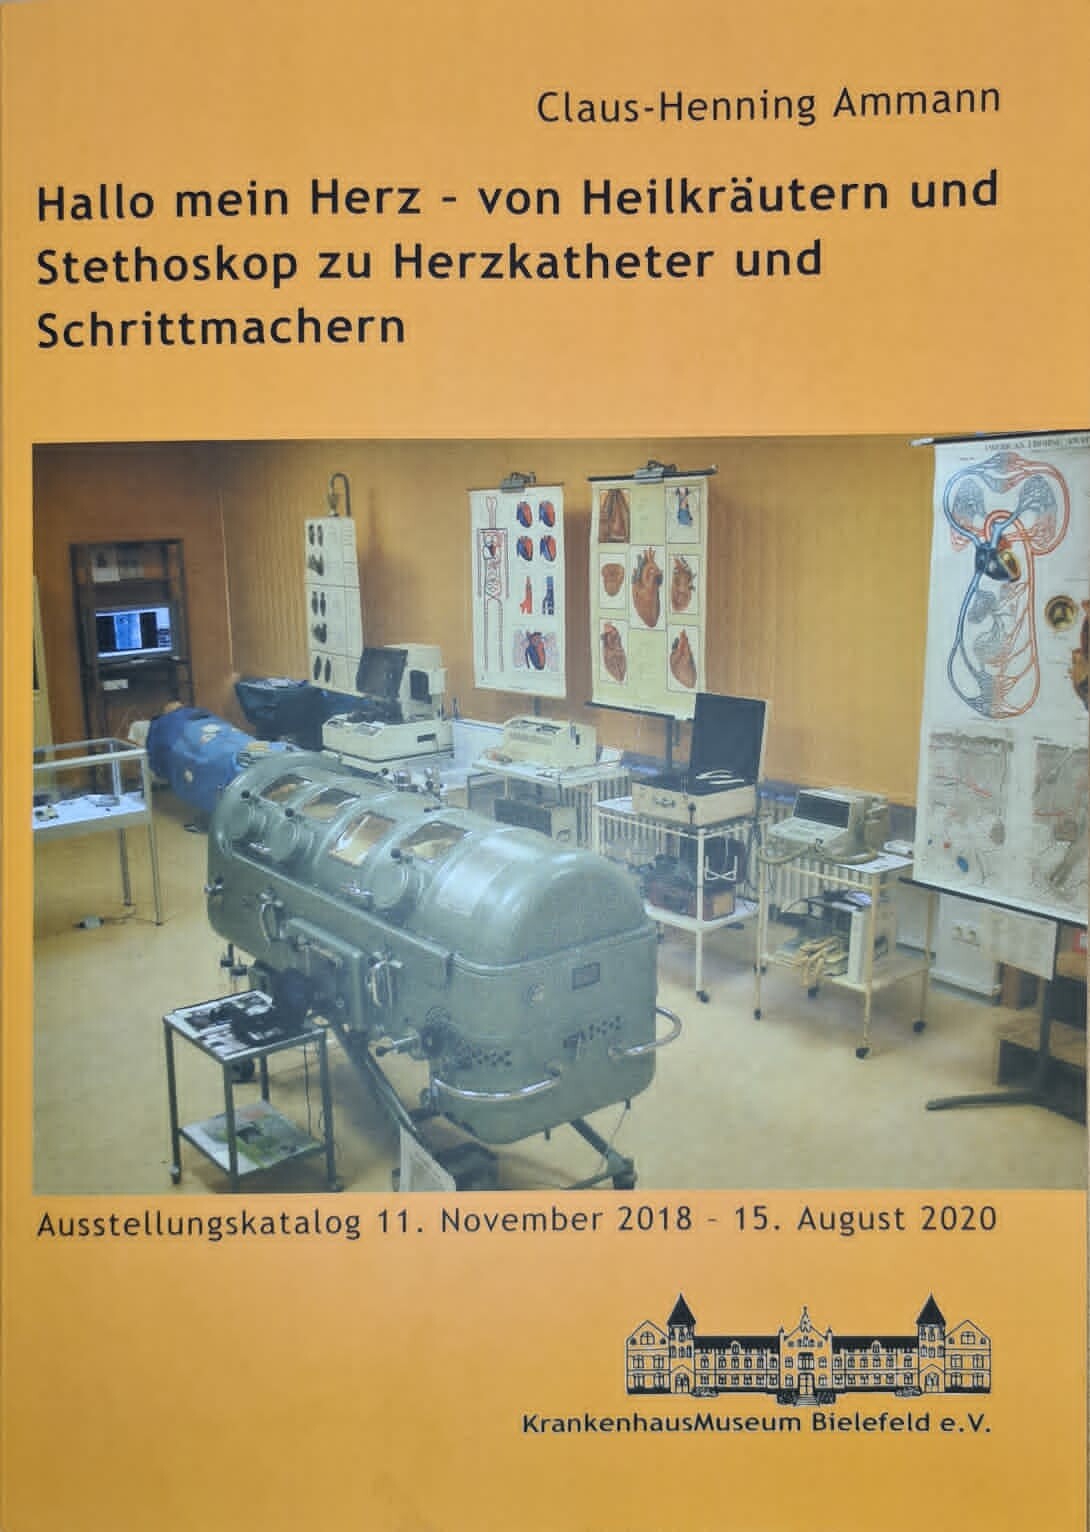 Hallo mein Herz-von Heilkräutern und Stethoskop zu Herzkatheter und Schrittmachern (Krankenhausmuseum Bielefeld e.V. CC BY-NC-SA)